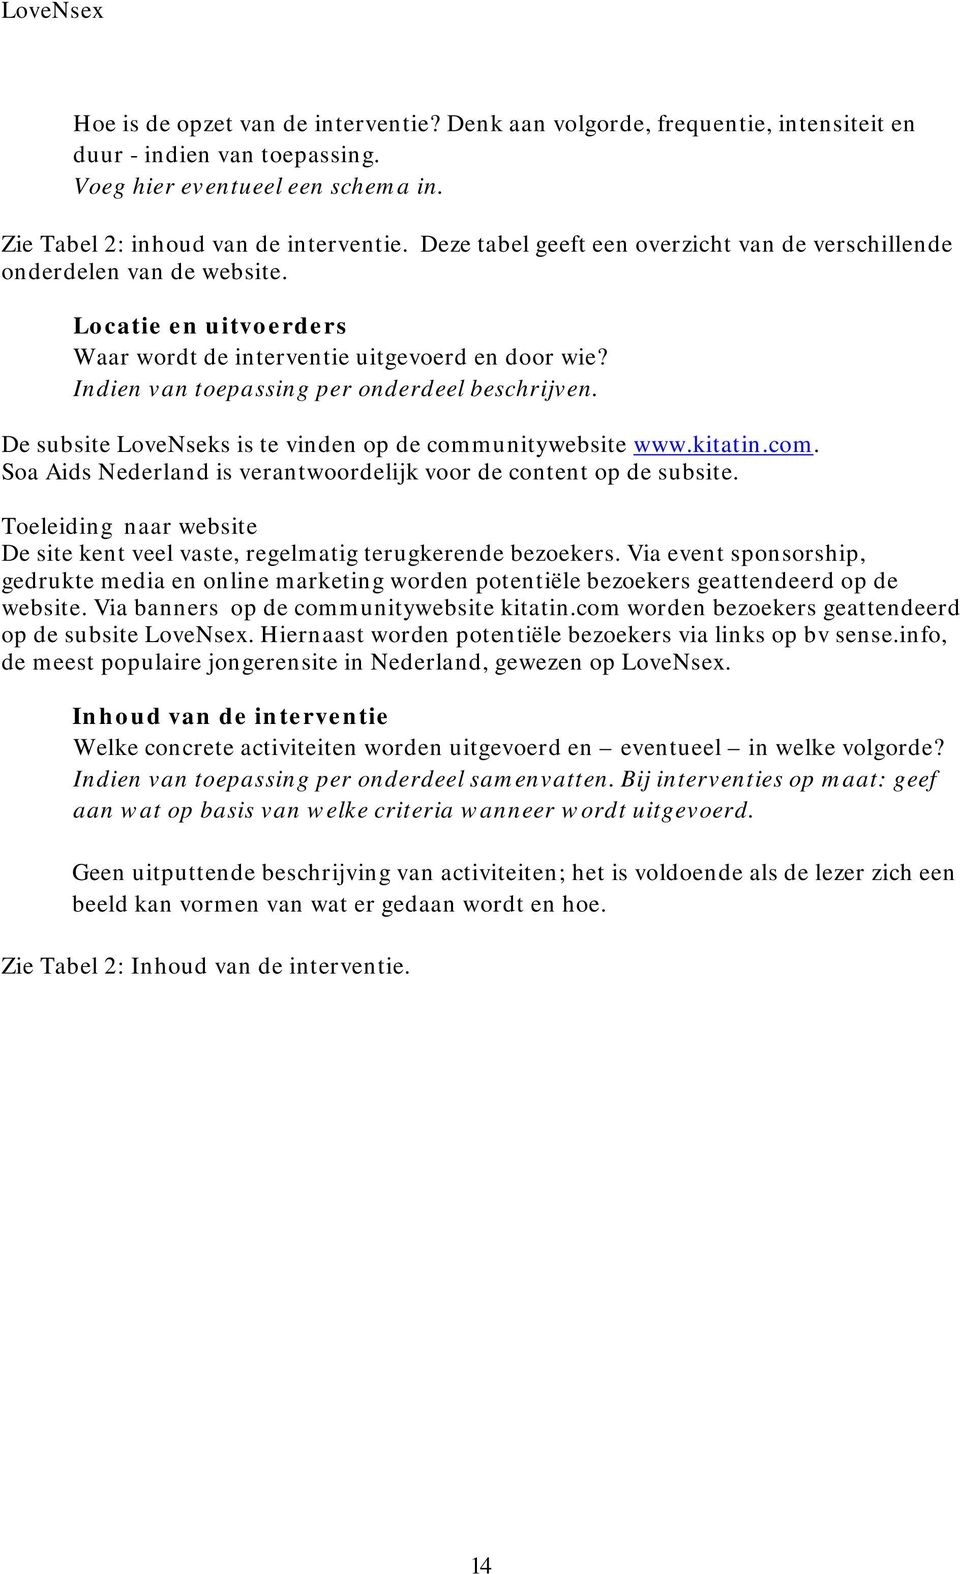 De subsite LoveNseks is te vinden op de communitywebsite www.kitatin.com. Soa Aids Nederland is verantwoordelijk voor de content op de subsite.